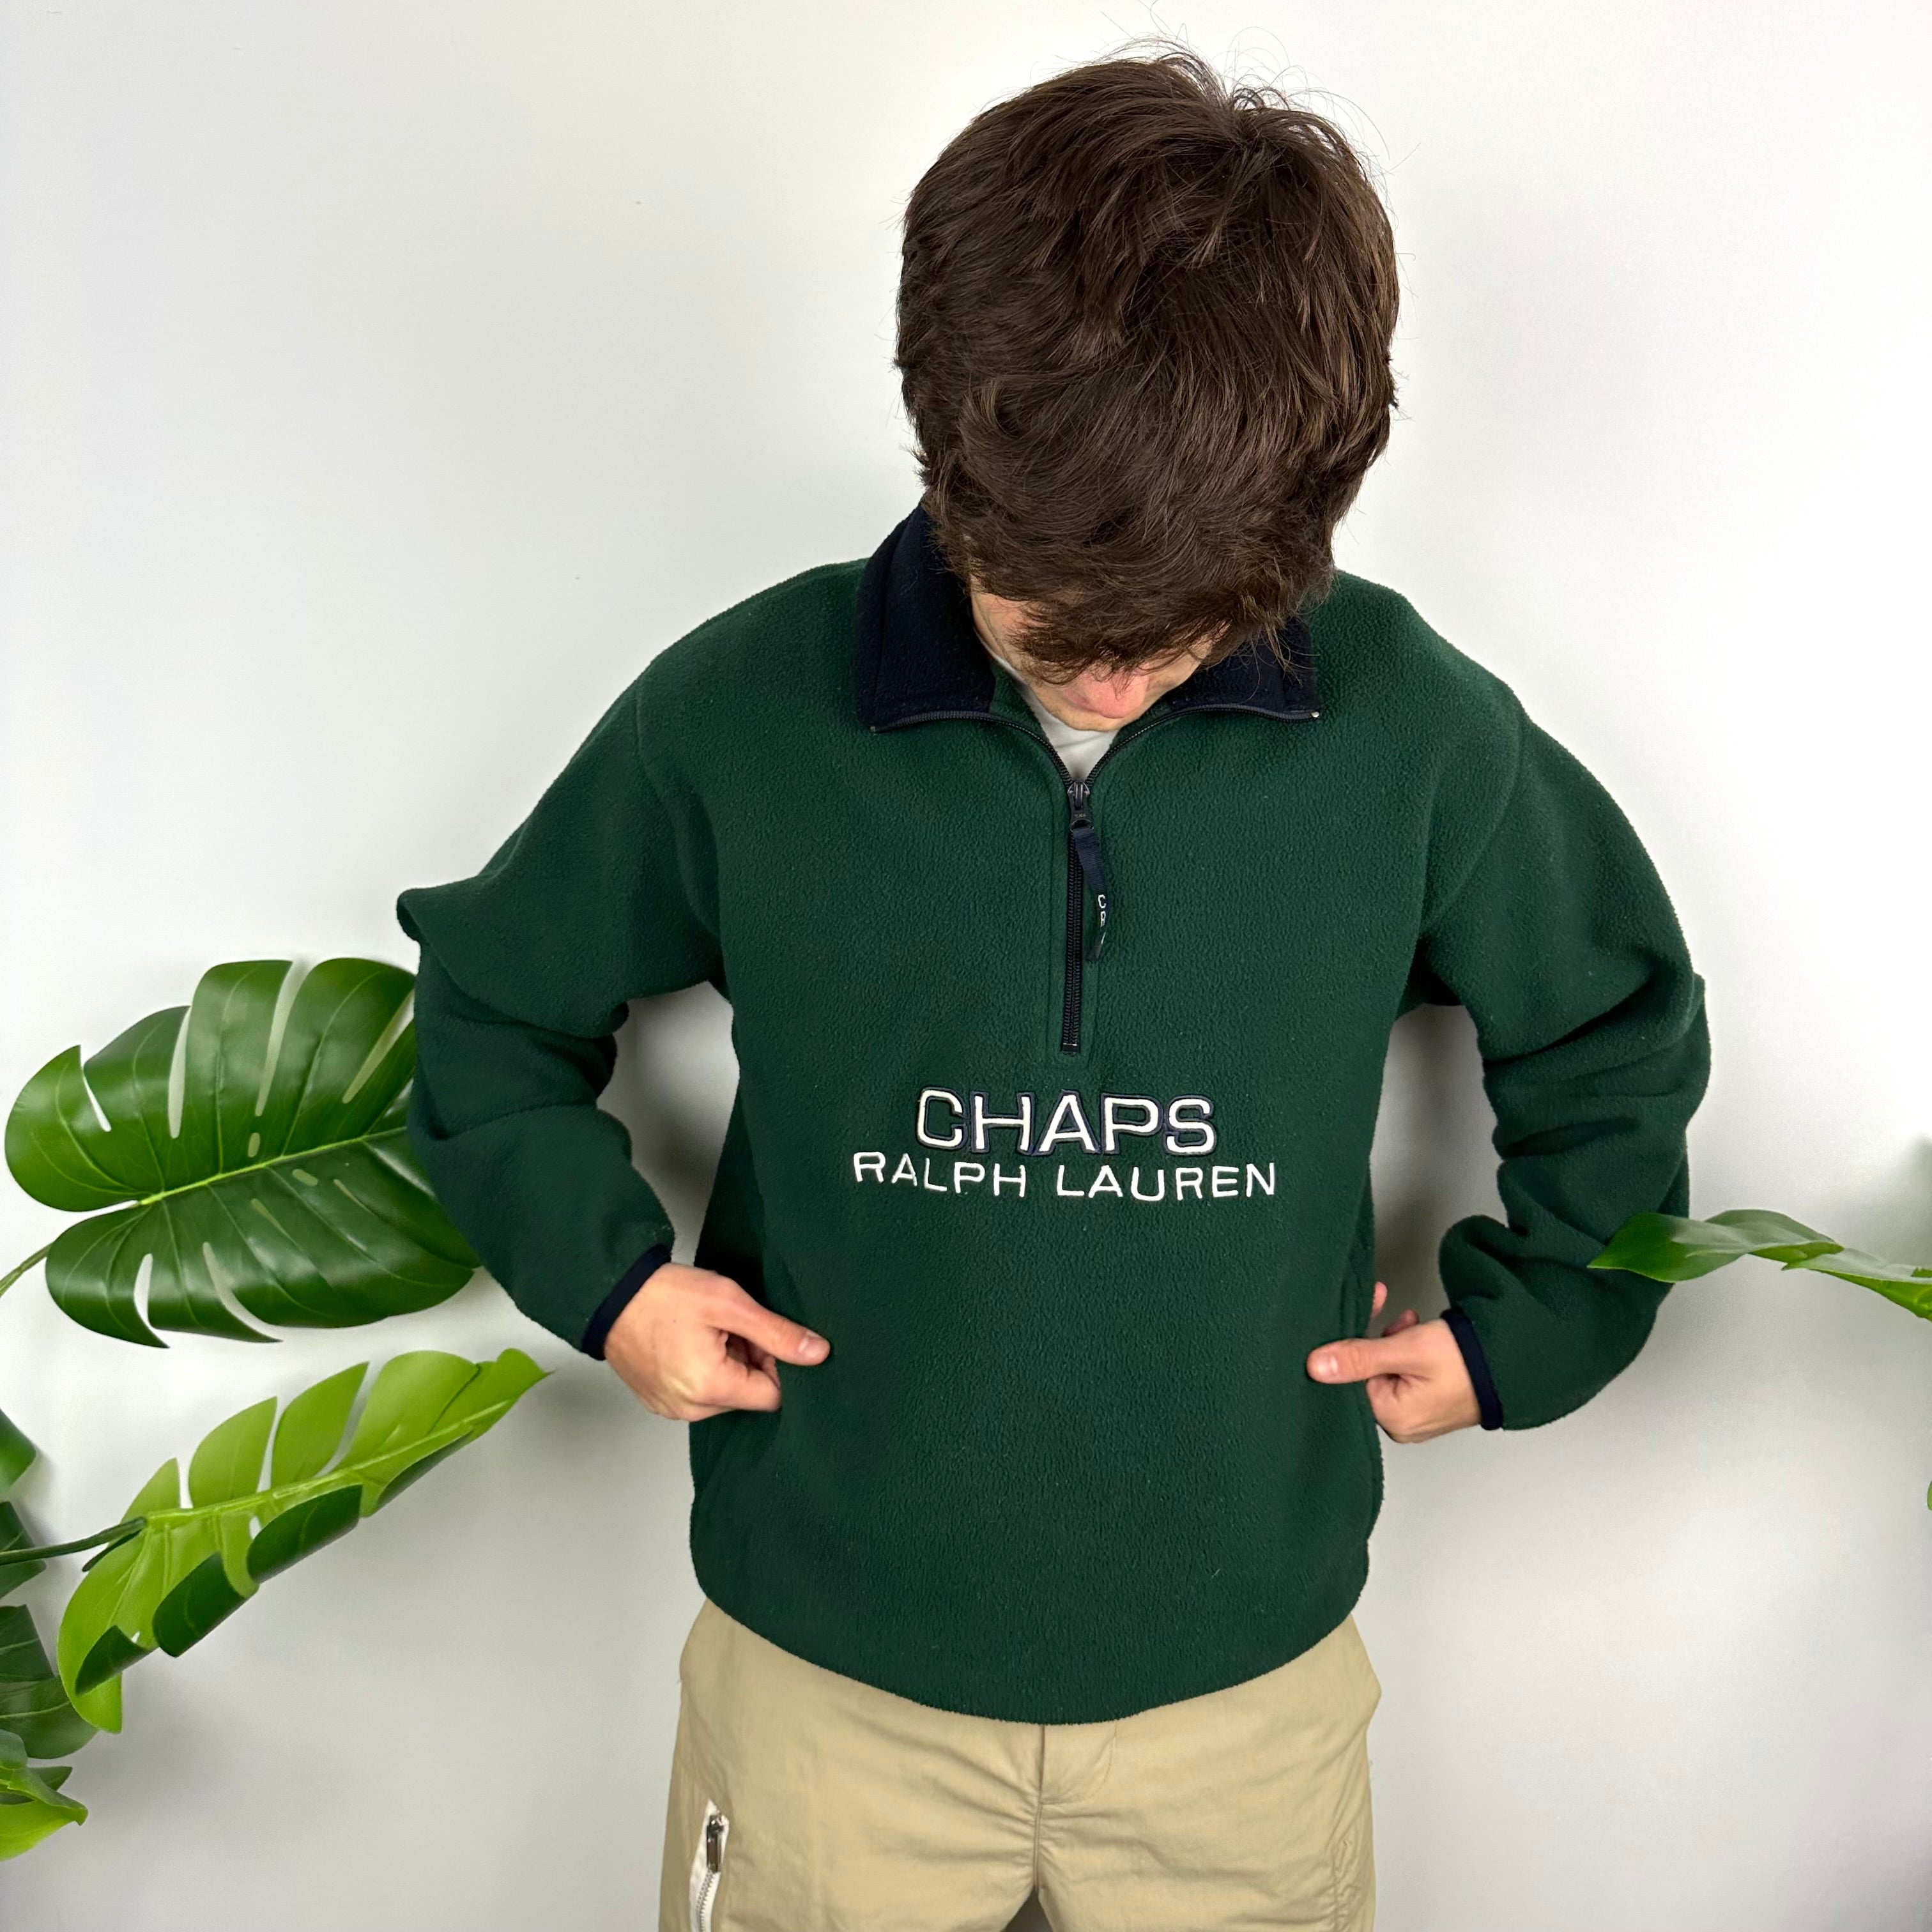 Chaps Ralph Lauren Green Embroidered Spell Out Teddy Bear Fleece Quarter Zip Sweatshirt (M)